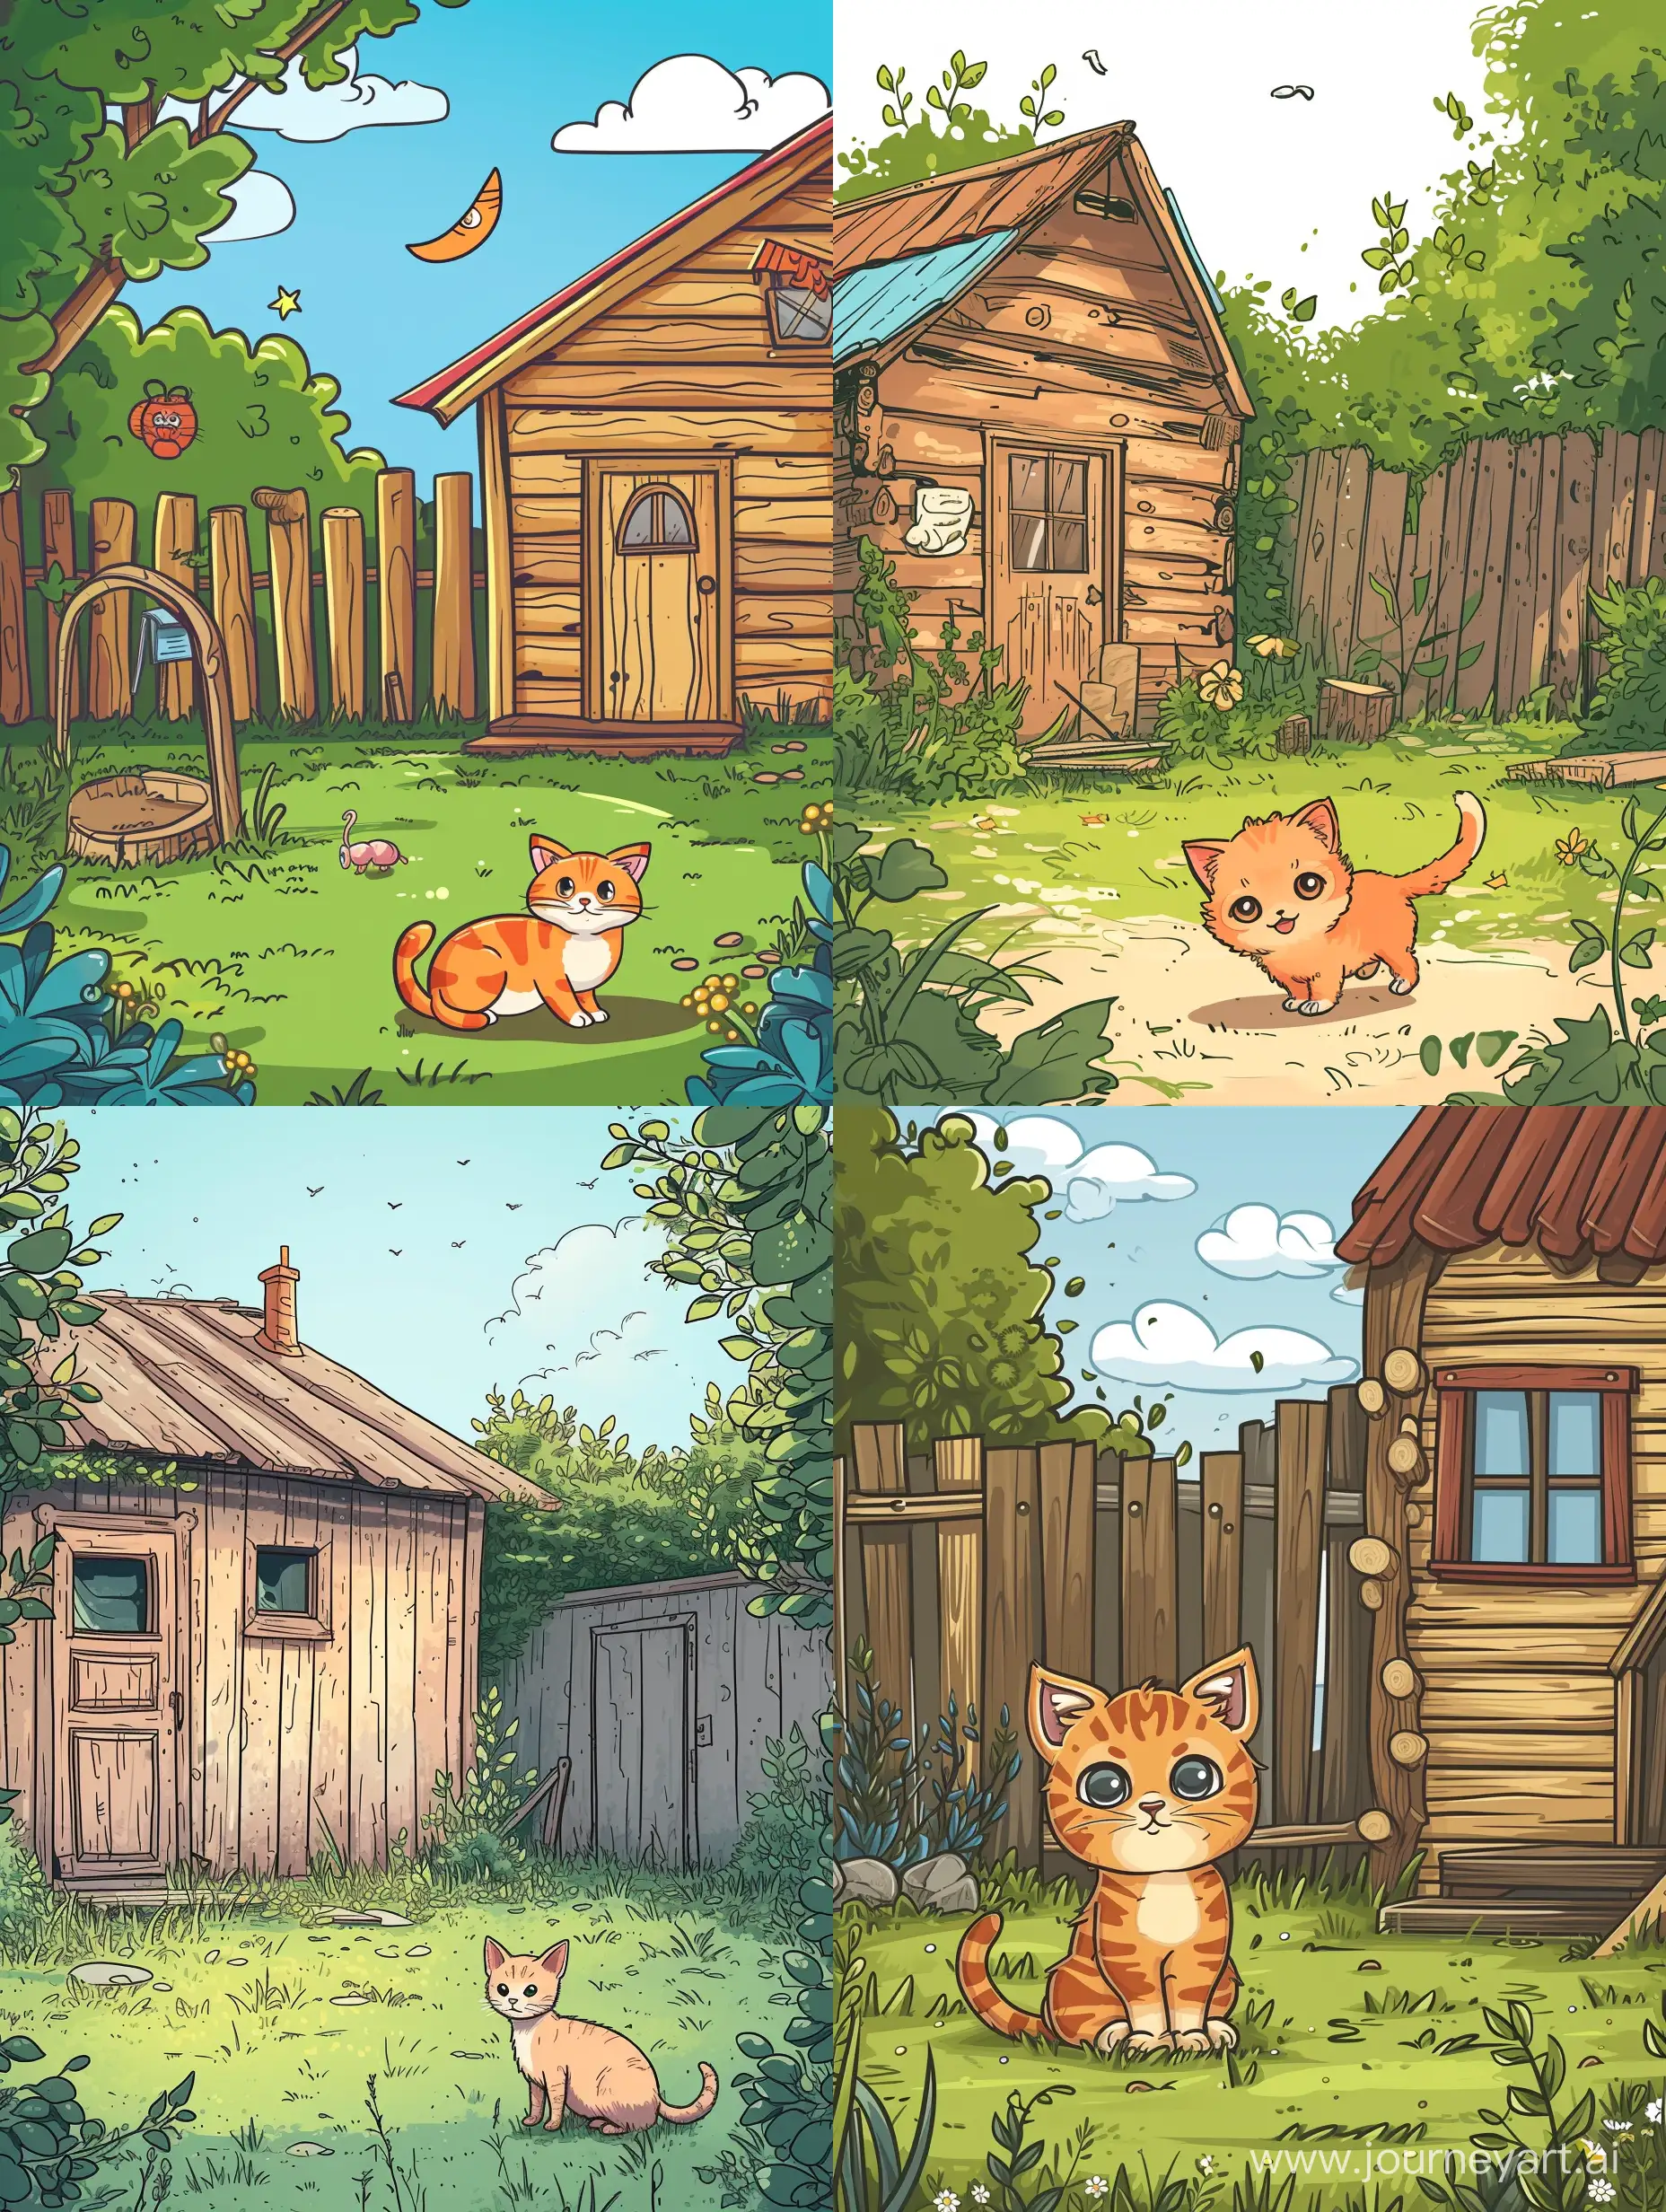 нарисуй милую вертикальную картинку в мультяшном стиле с милым котенком во дворе деревянного дома с разными мелочами